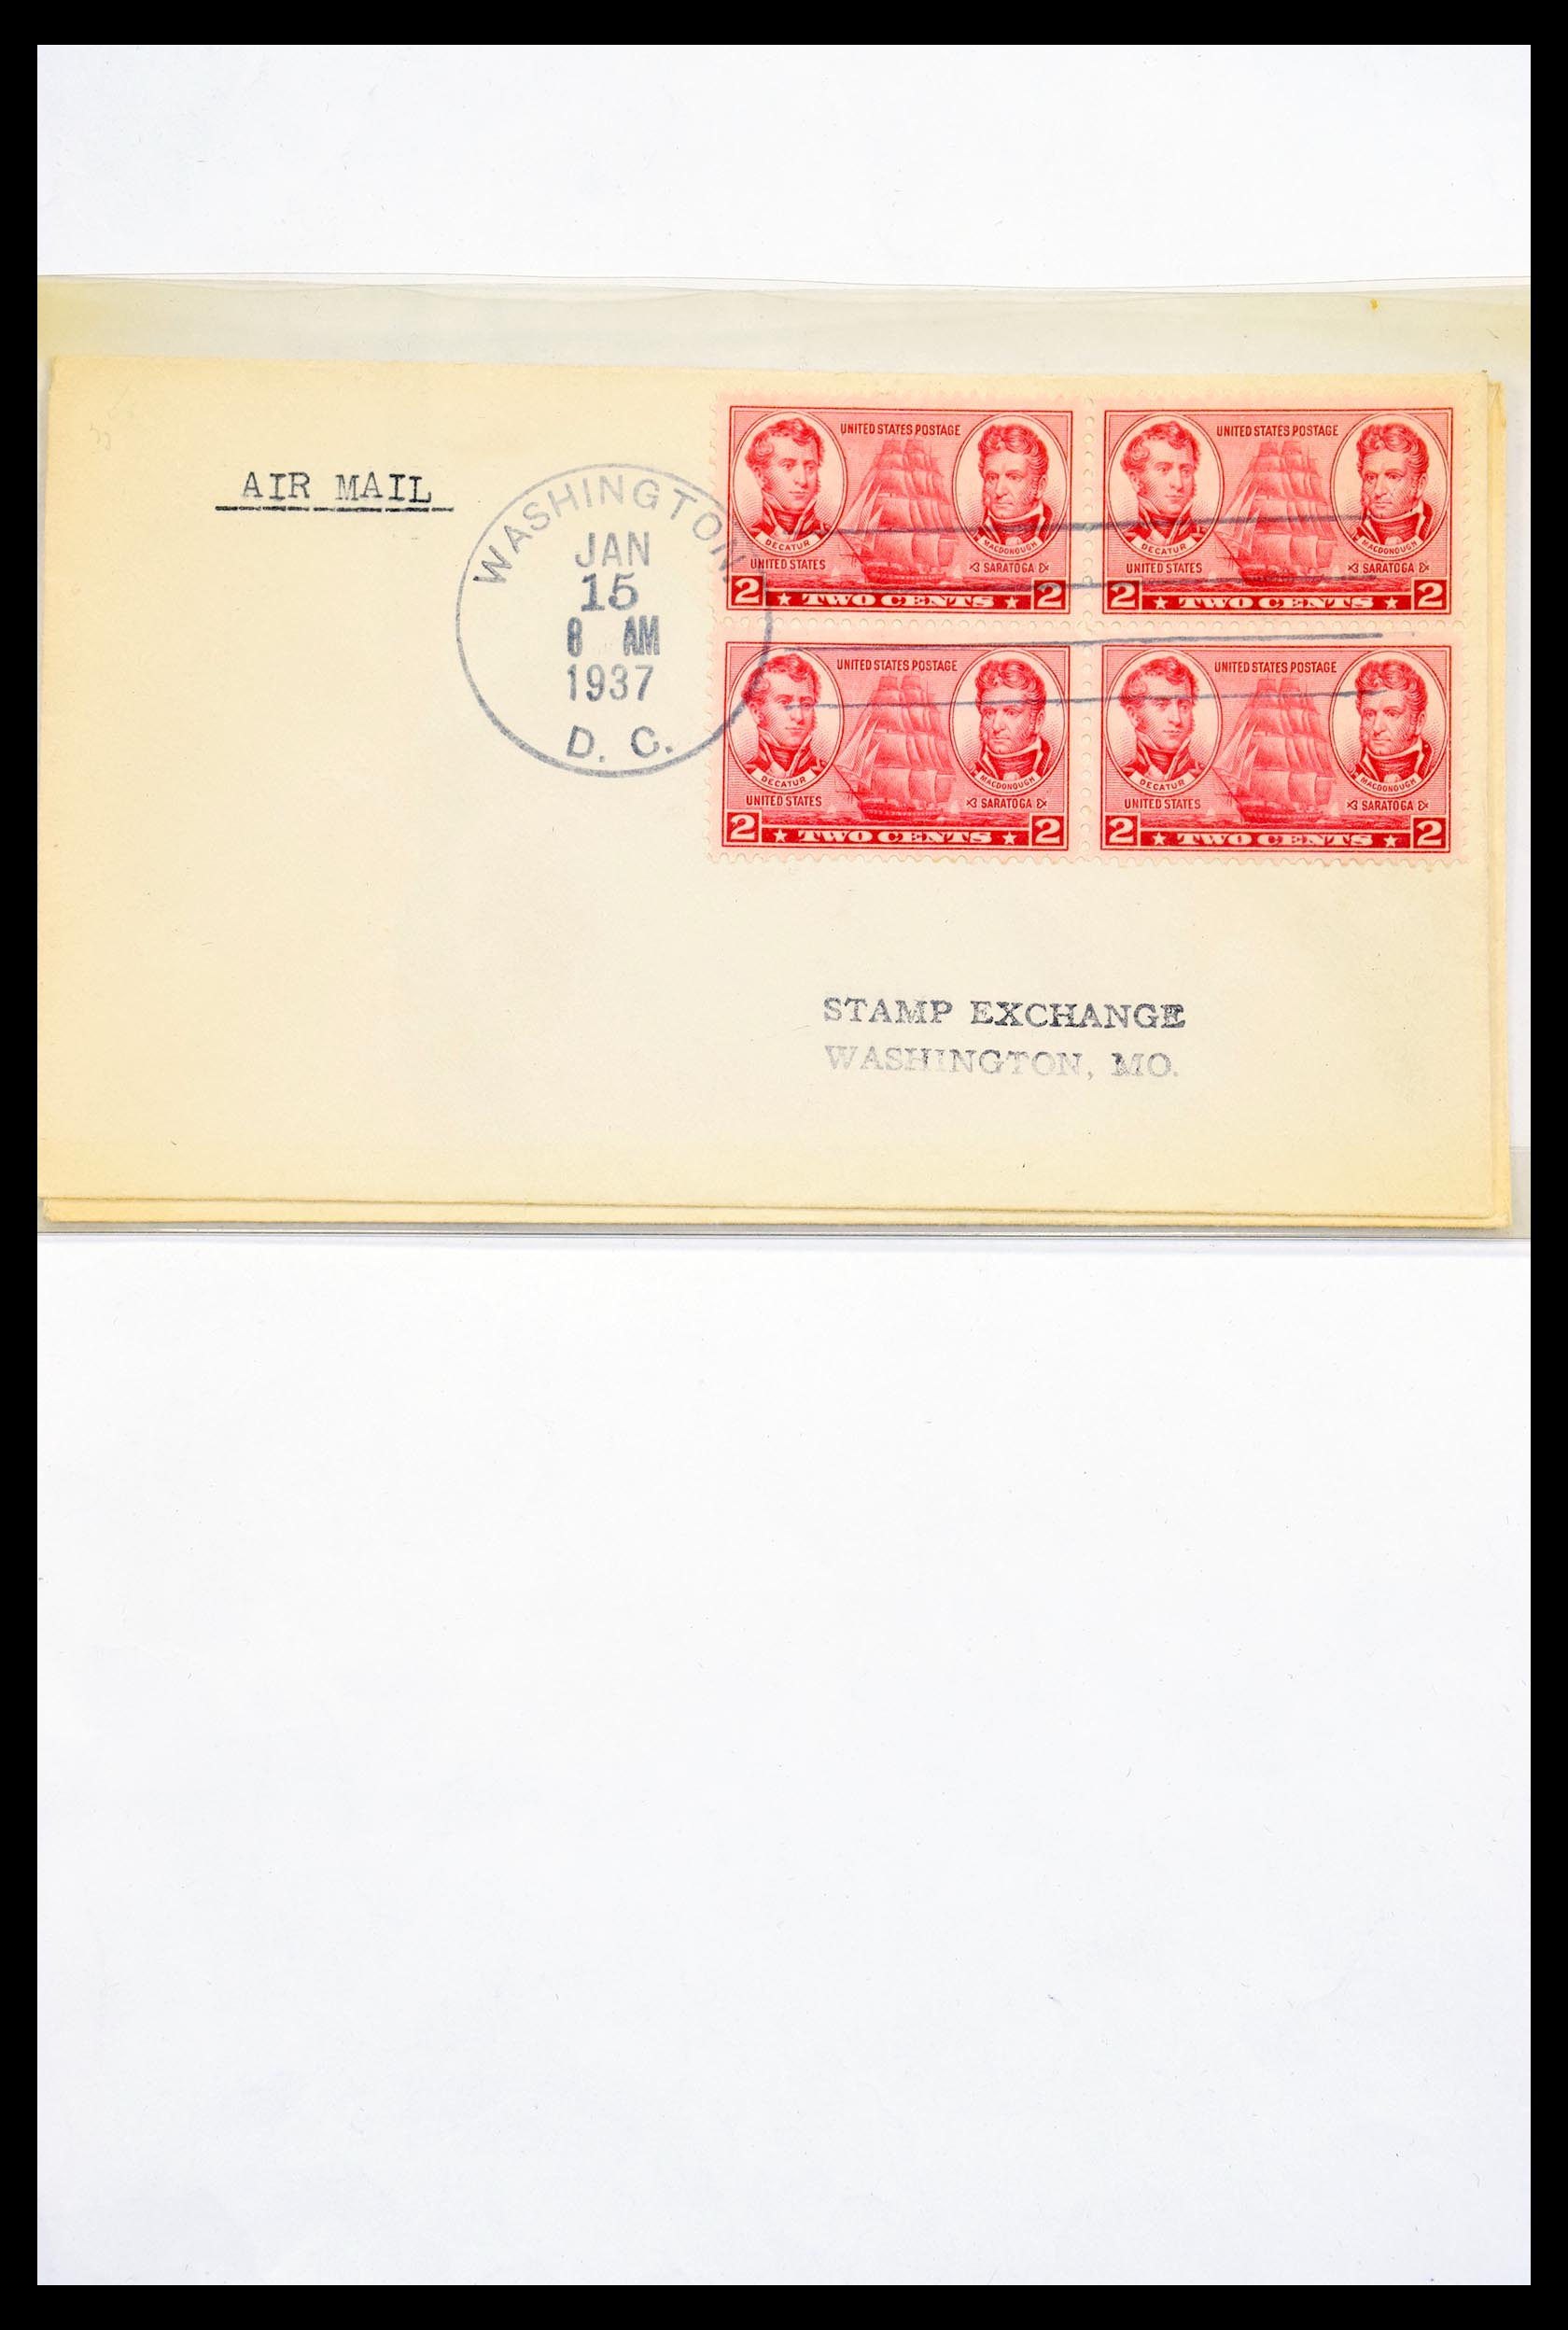 30341 285 - 30341 USA scheepspost brieven 1930-1970.